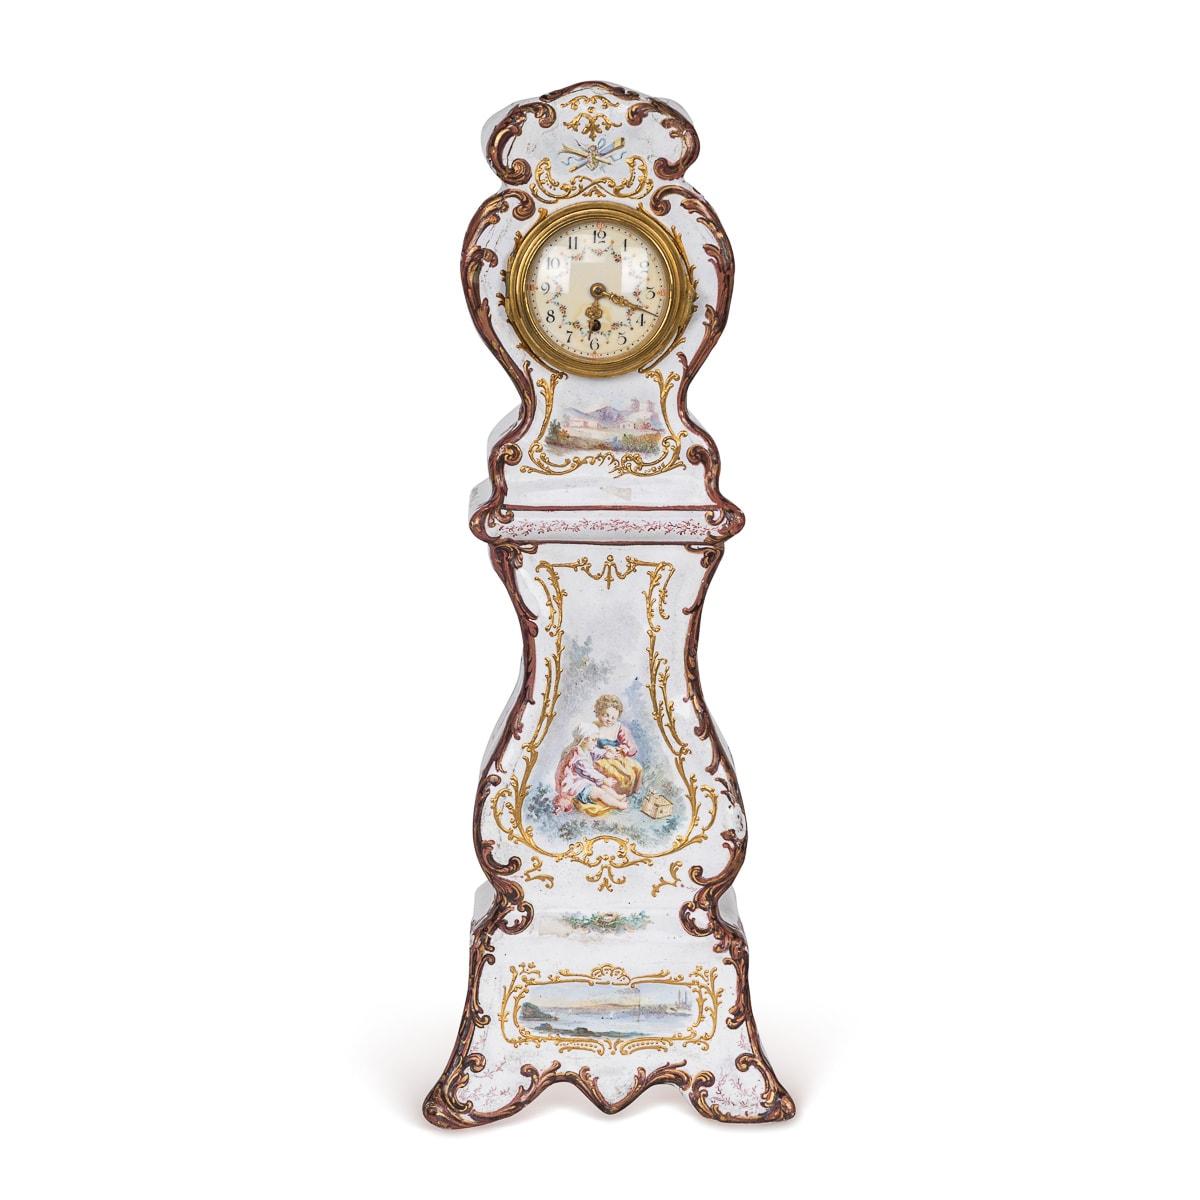 Ancienne horloge de table anglaise en émail du XVIIIe siècle, exsudant le charme, son émail blanc délicat est orné de motifs floraux et de scènes romantiques. Formée d'une horloge de grand-père miniature, de forme verticale incurvée, embellie de